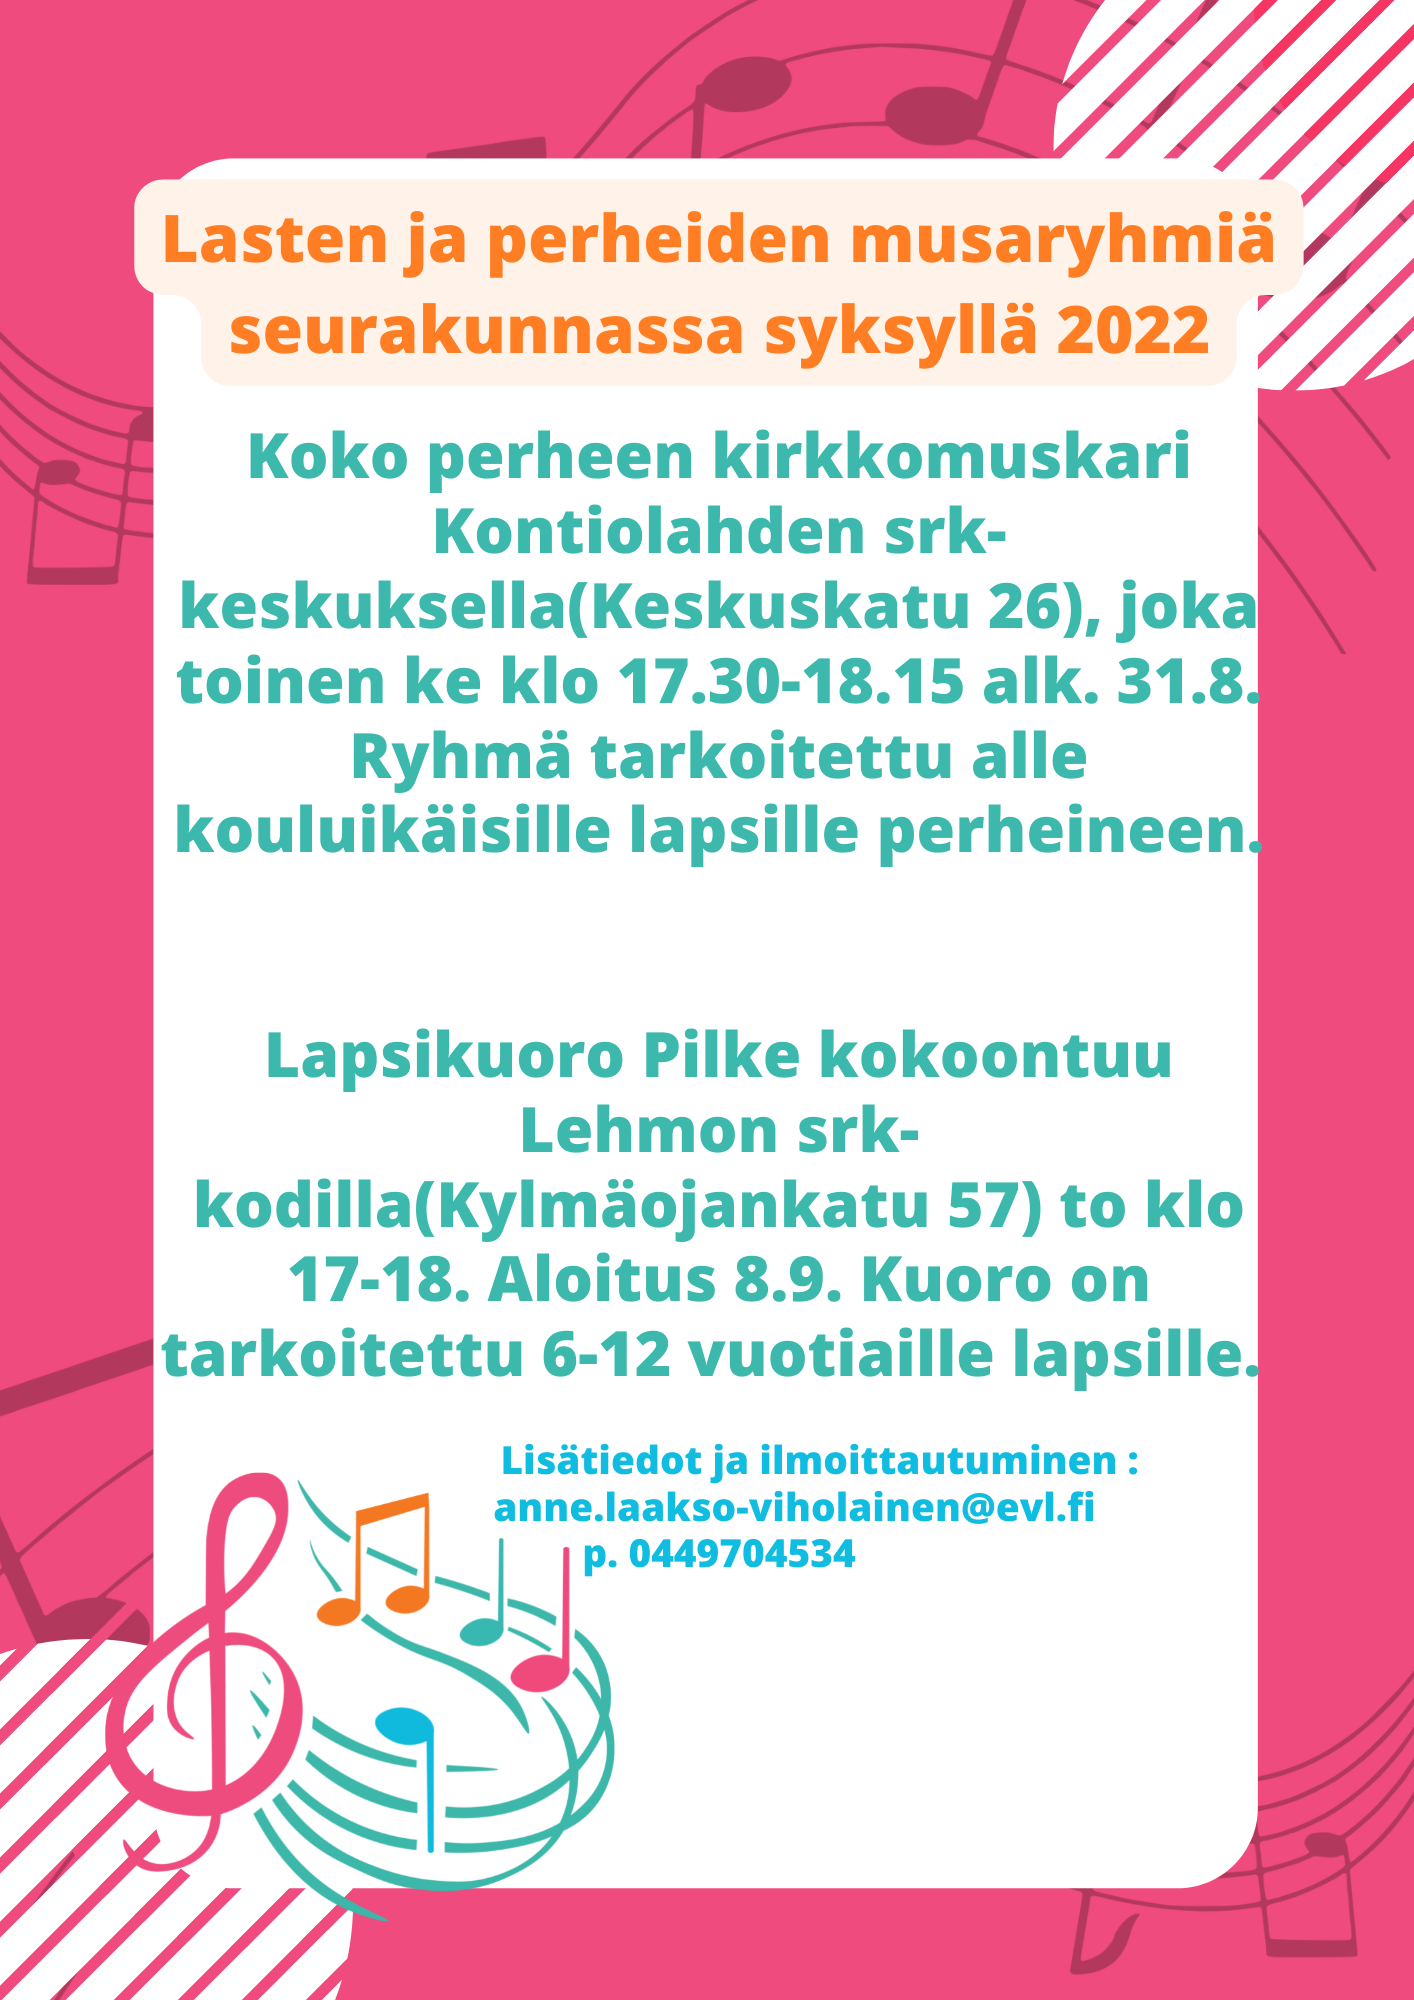 Lasten ja perheiden musaryhmiä seurakunnassa syksyllä 2022. Perhemuskarin aloitus 14.9.